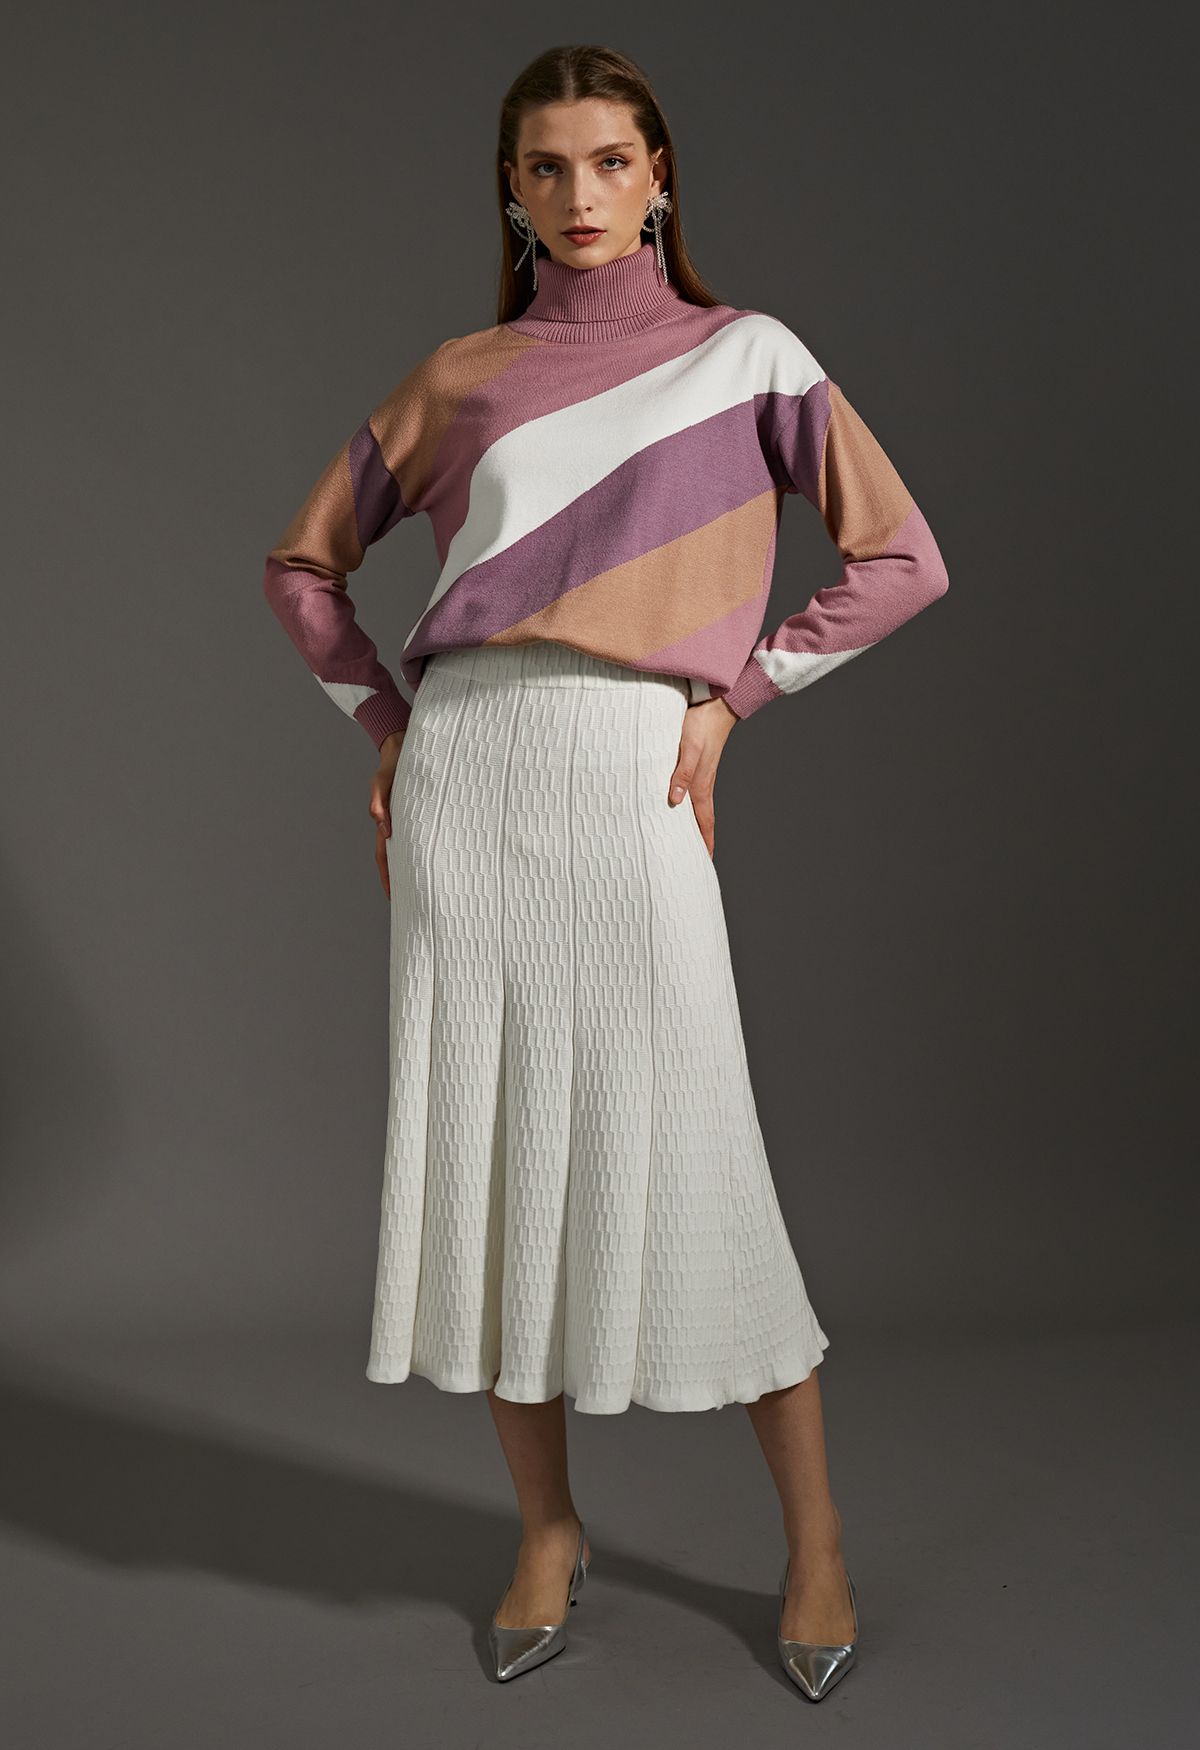 Suéter de punto de cuello alto con bloques de color a rayas en rosa